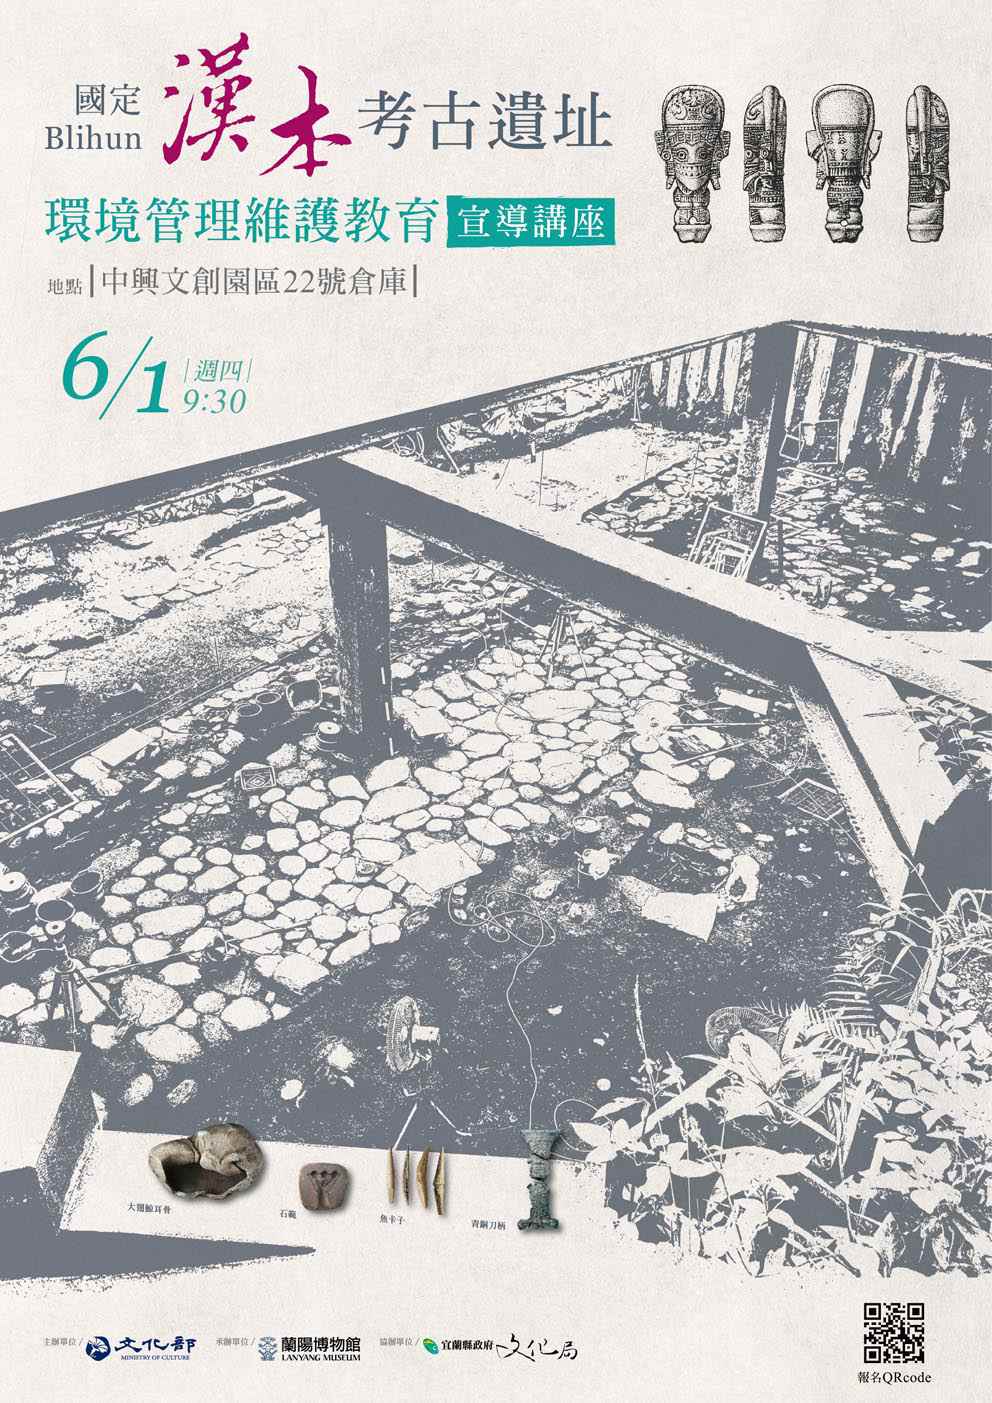 「國定Blihun漢本考古遺址」環境管理維護教育宣導講座文宣海報